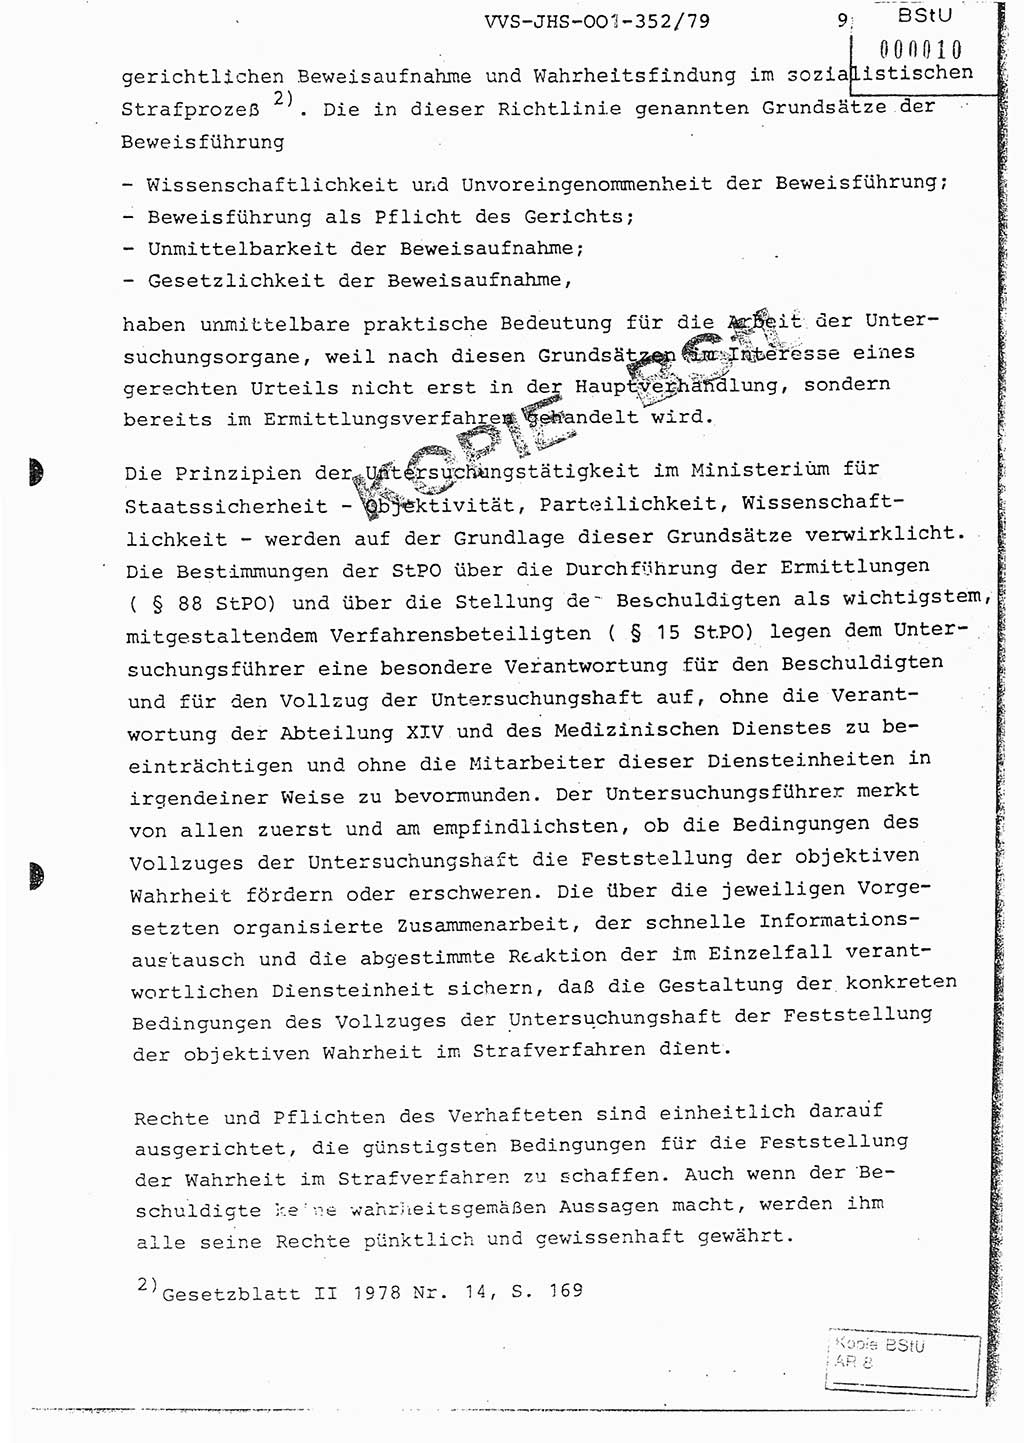 Diplomarbeit Hauptmann Peter Wittum (BV Bln. Abt. HA Ⅸ), Ministerium für Staatssicherheit (MfS) [Deutsche Demokratische Republik (DDR)], Juristische Hochschule (JHS), Vertrauliche Verschlußsache (VVS) o001-352/79, Potsdam 1979, Seite 9 (Dipl.-Arb. MfS DDR JHS VVS o001-352/79 1979, S. 9)